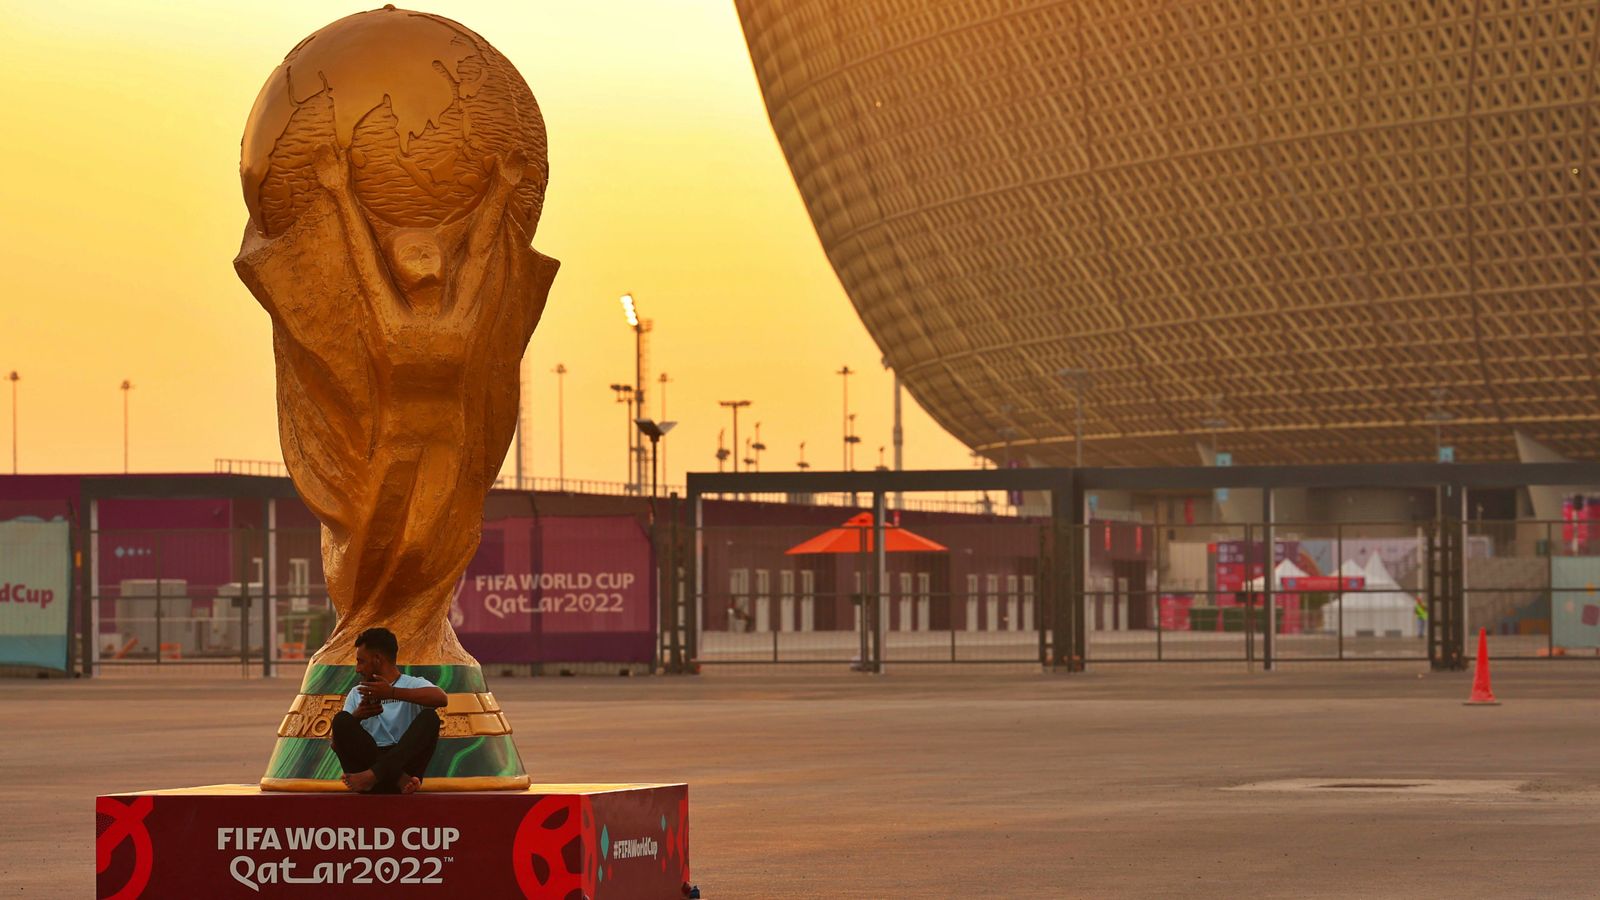 Mondiali 2022: i tifosi non potranno acquistare alcolici negli stadi durante il torneo del Qatar |  notizie di calcio